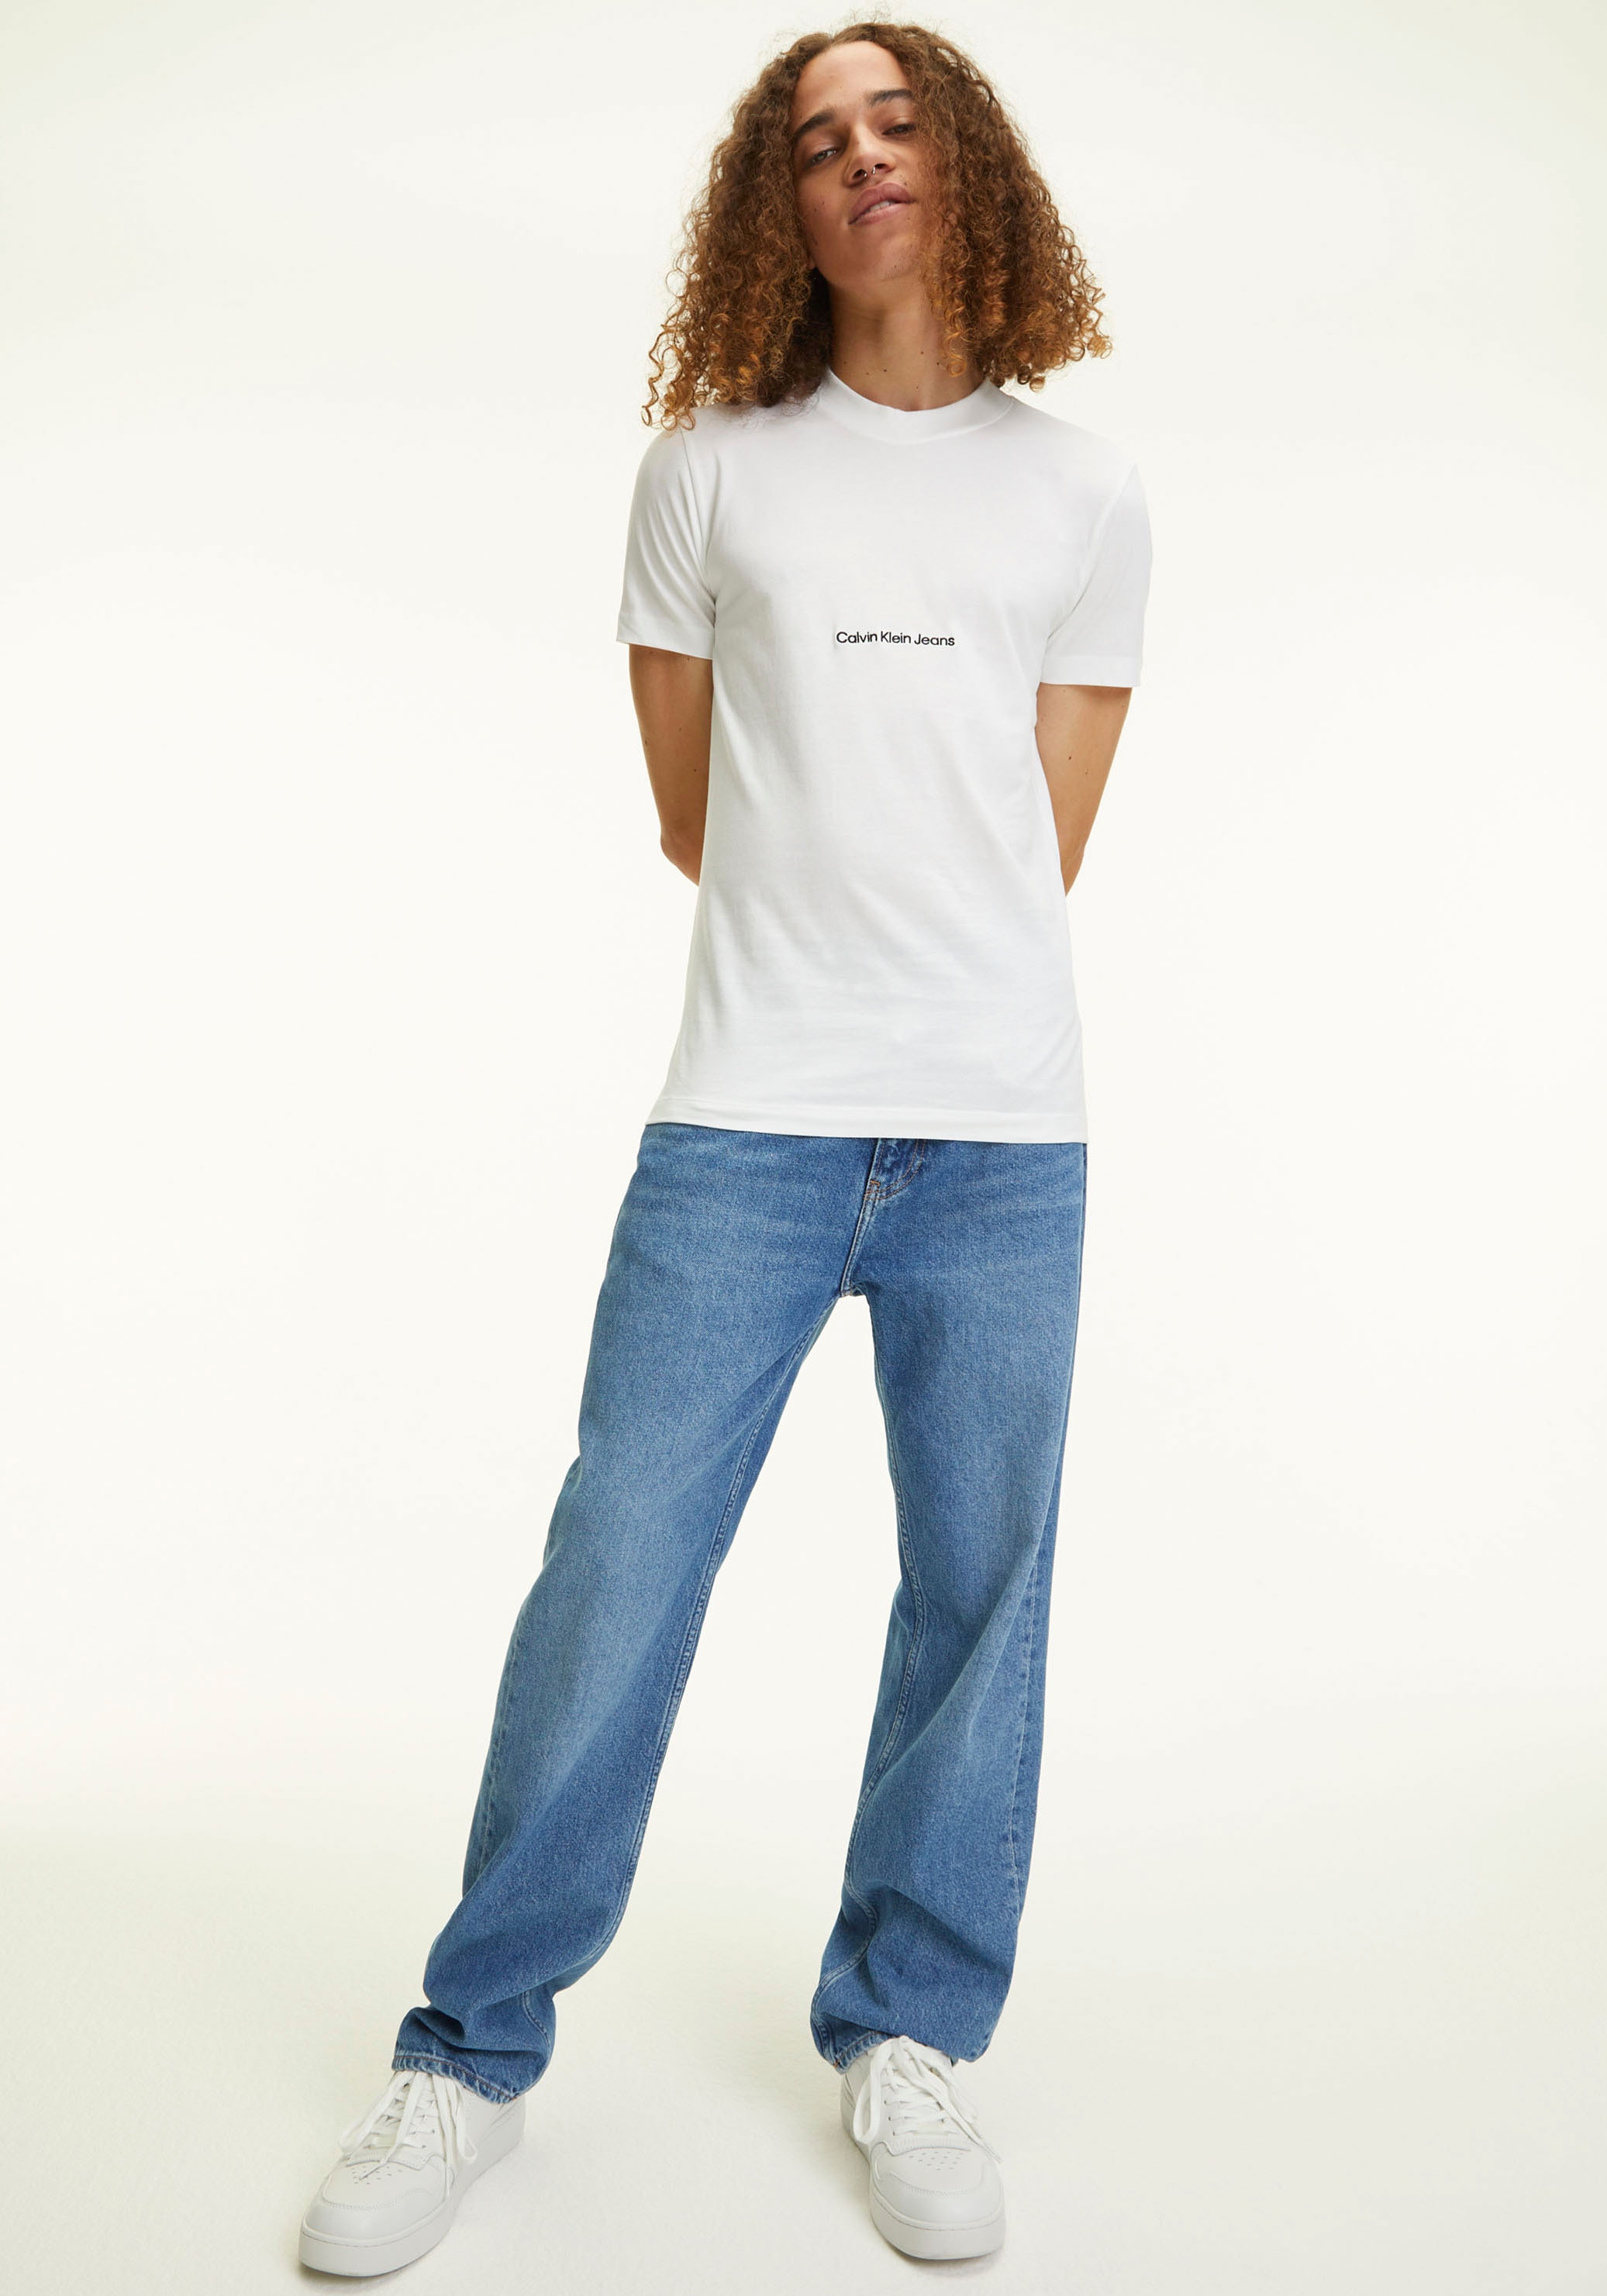 Calvin Klein Jeans Kurzarmshirt, mit Calvin Klein Jeans Logoprint kaufen